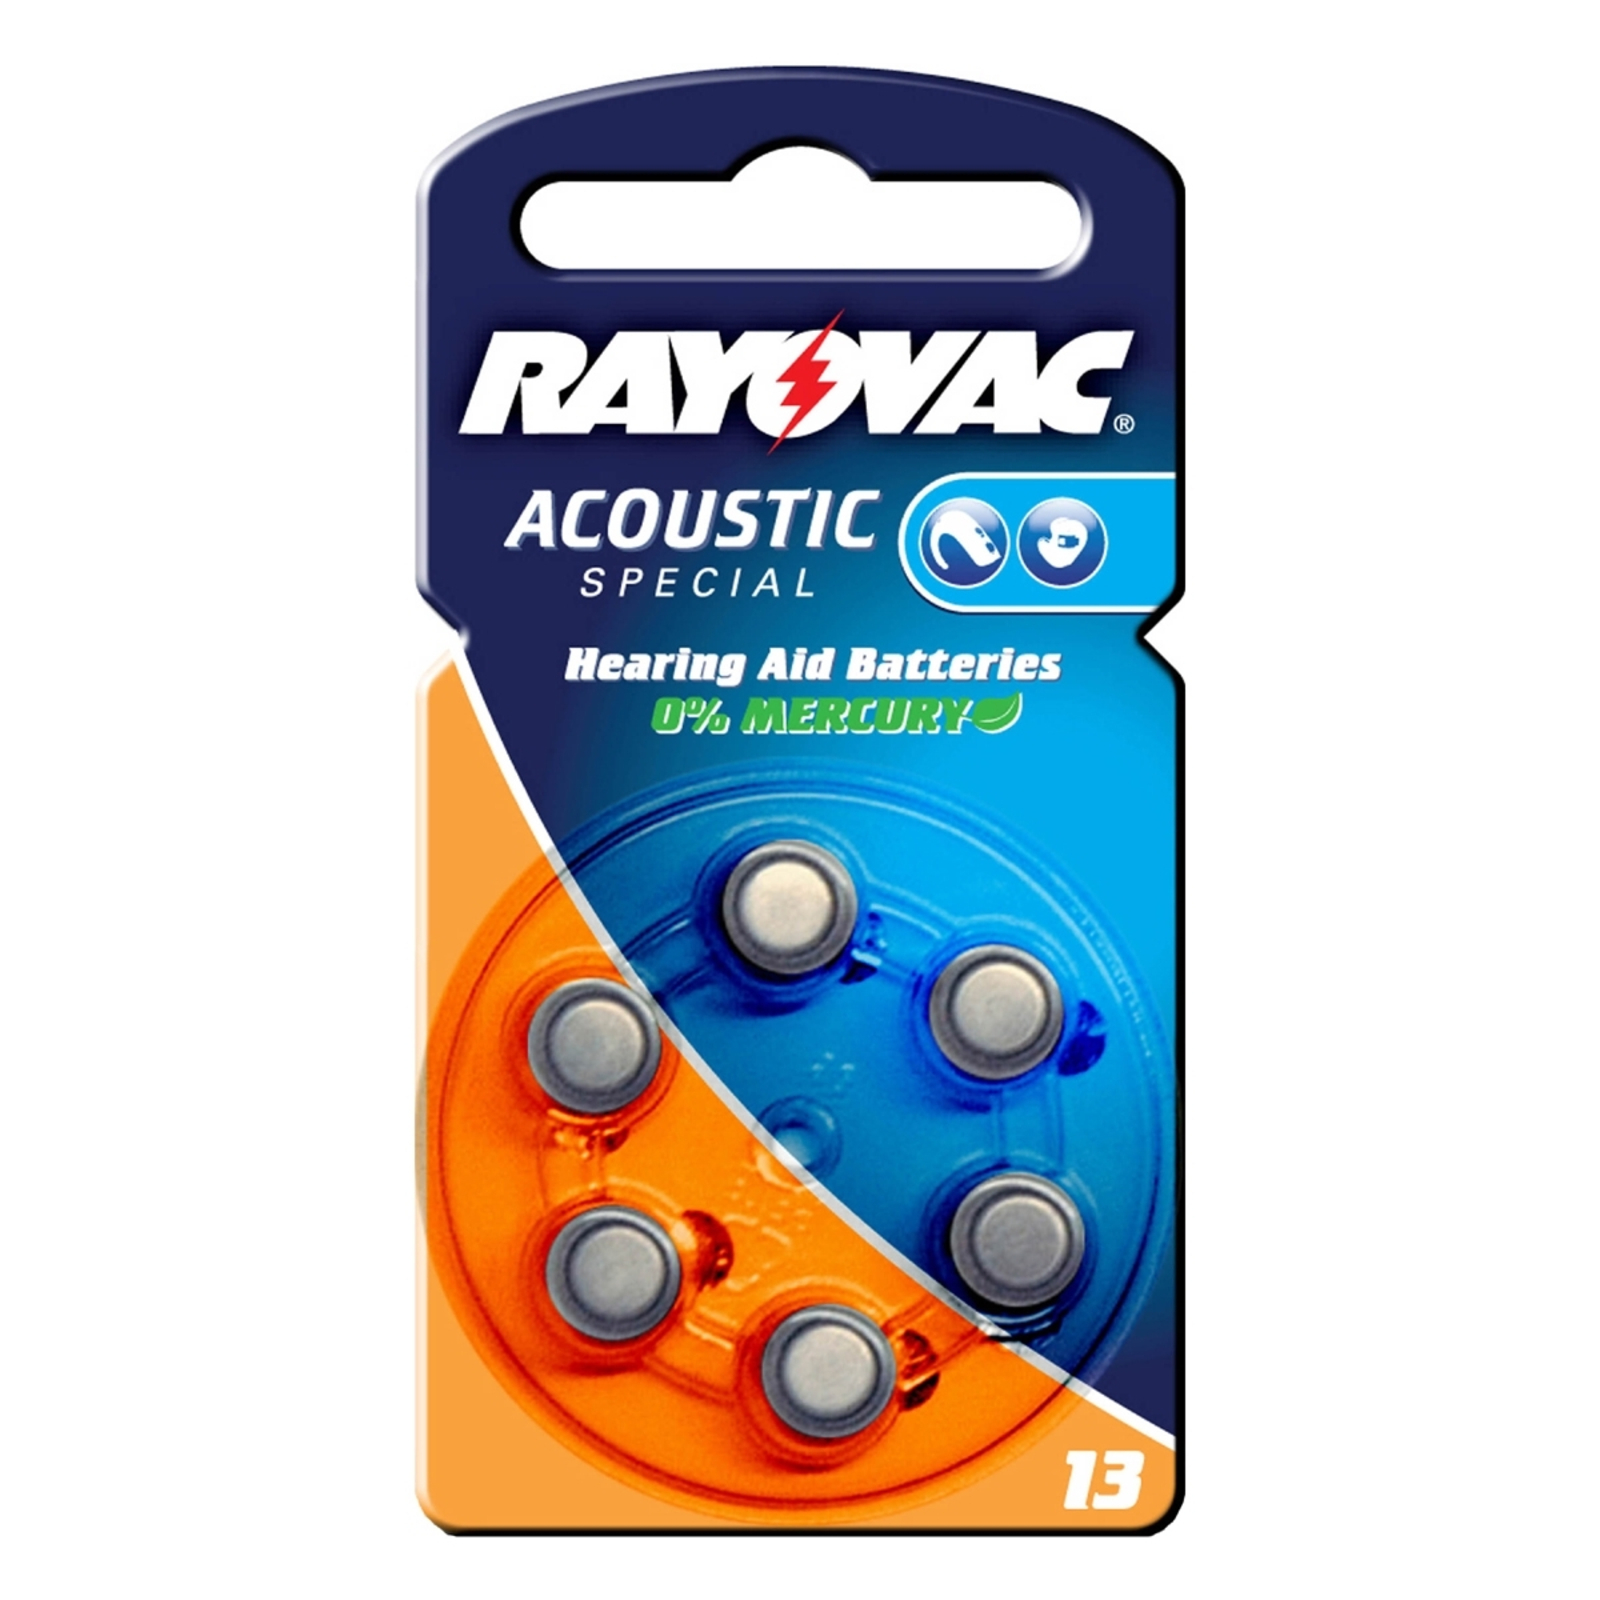 Acoustic 1,4 V, 310m/Ah nappiparisto Rayovac 13